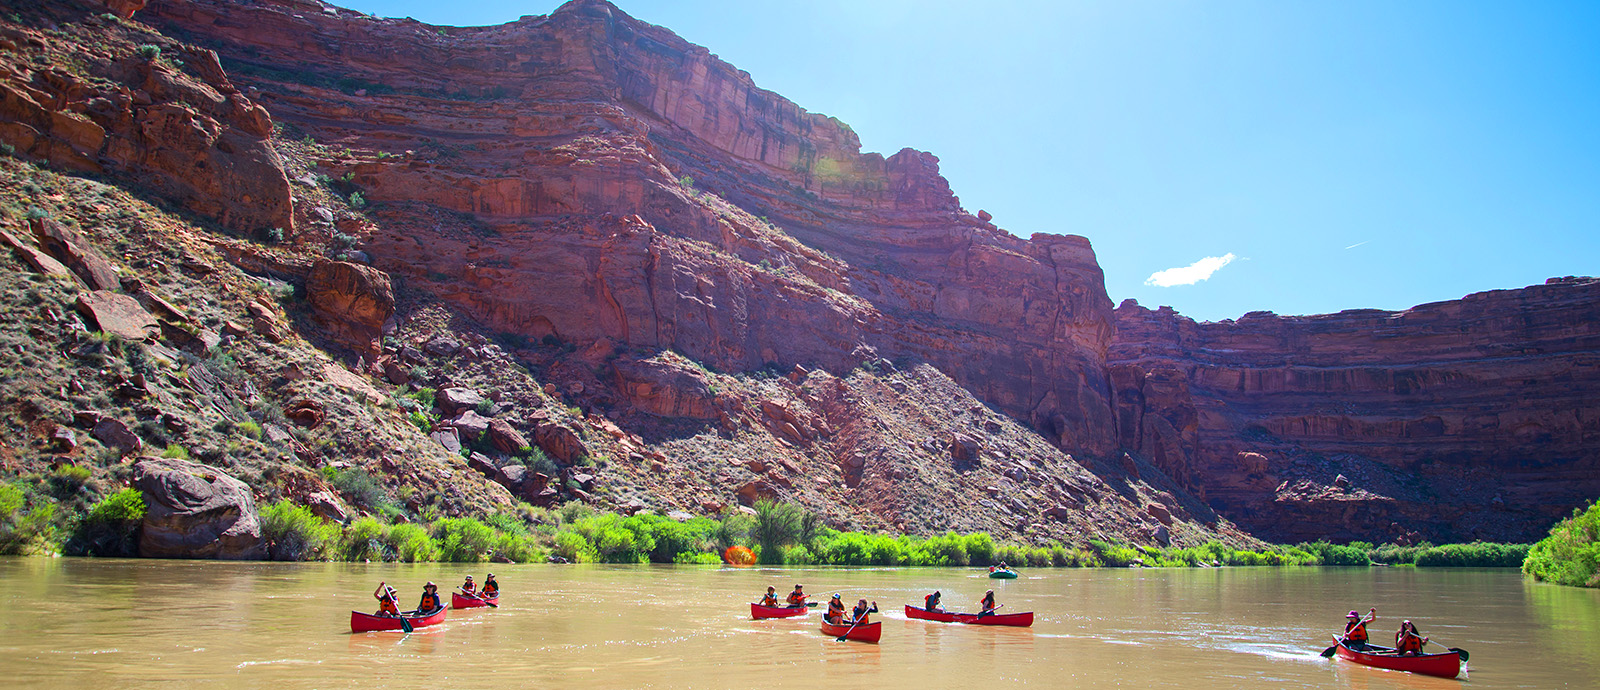 Utah’s Green River Canoe